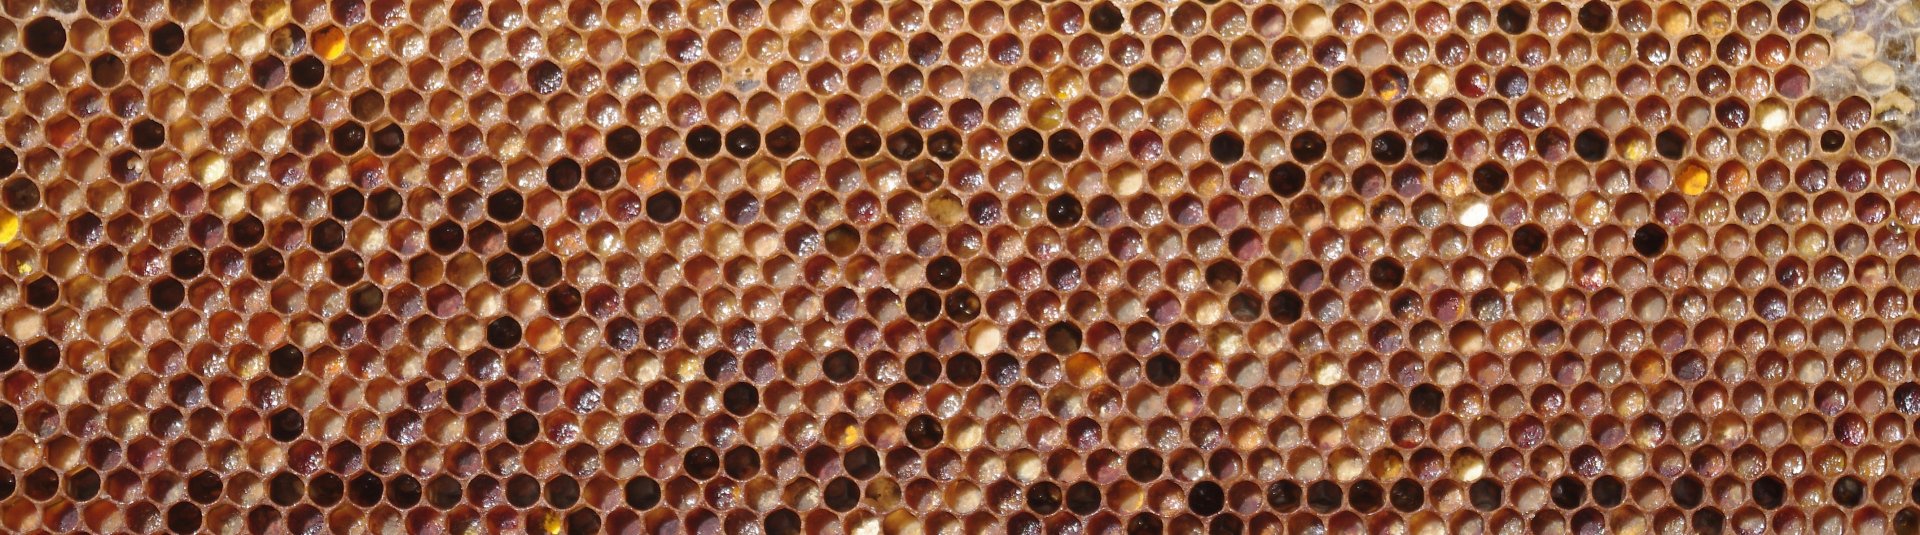 Pollen in honeycomb